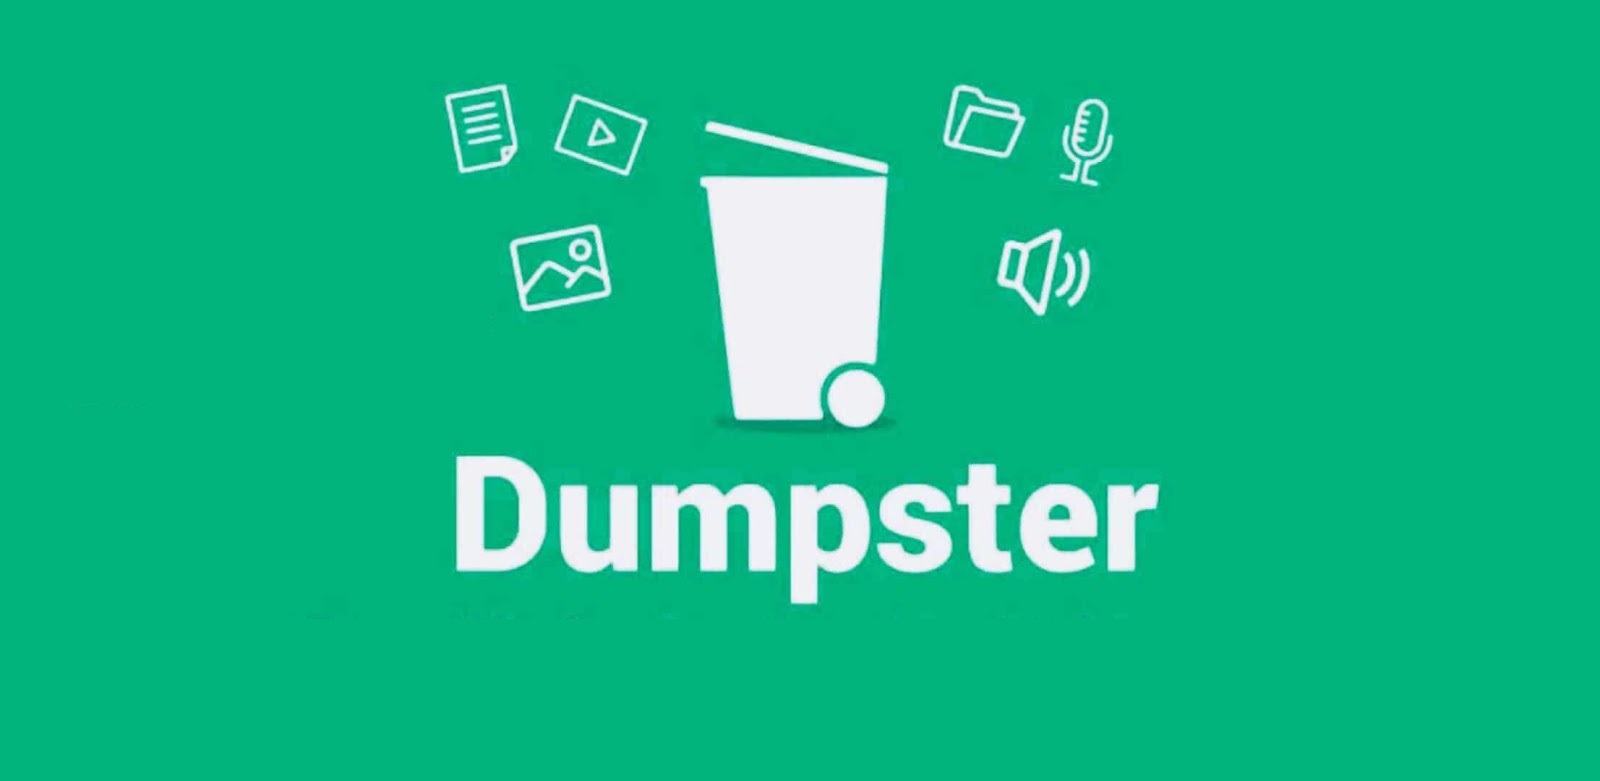 برنامج استرجاع الفيديوهات المحذوفة للاندرويد مجانا Dumpster